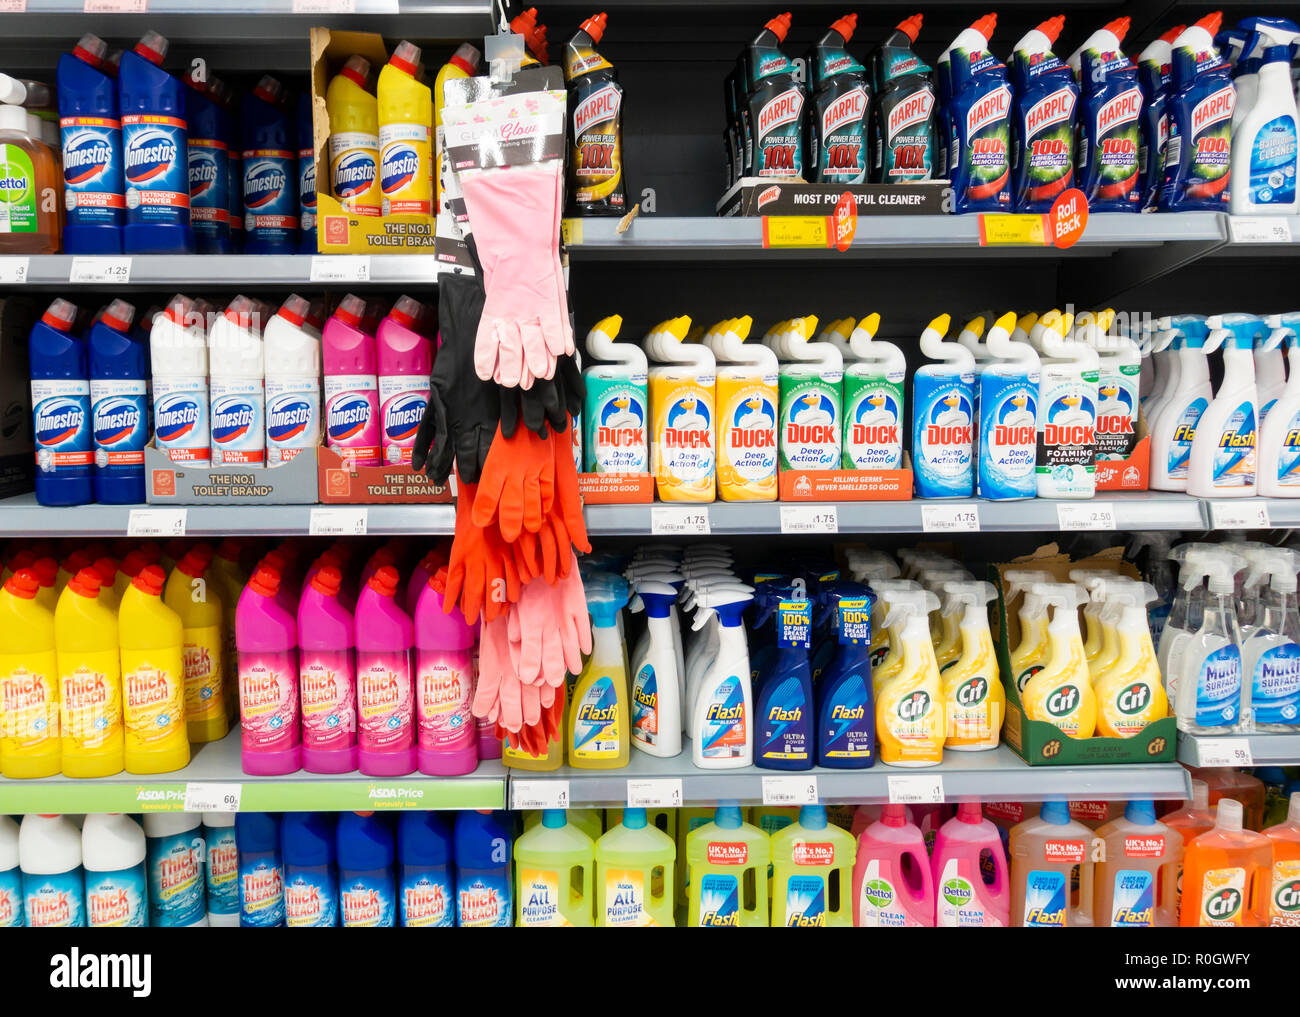 Toilette/Badezimmer Reinigung Produkte: Bleichen, wc Leitung..., in Asda Supermarkt. Großbritannien Stockfoto